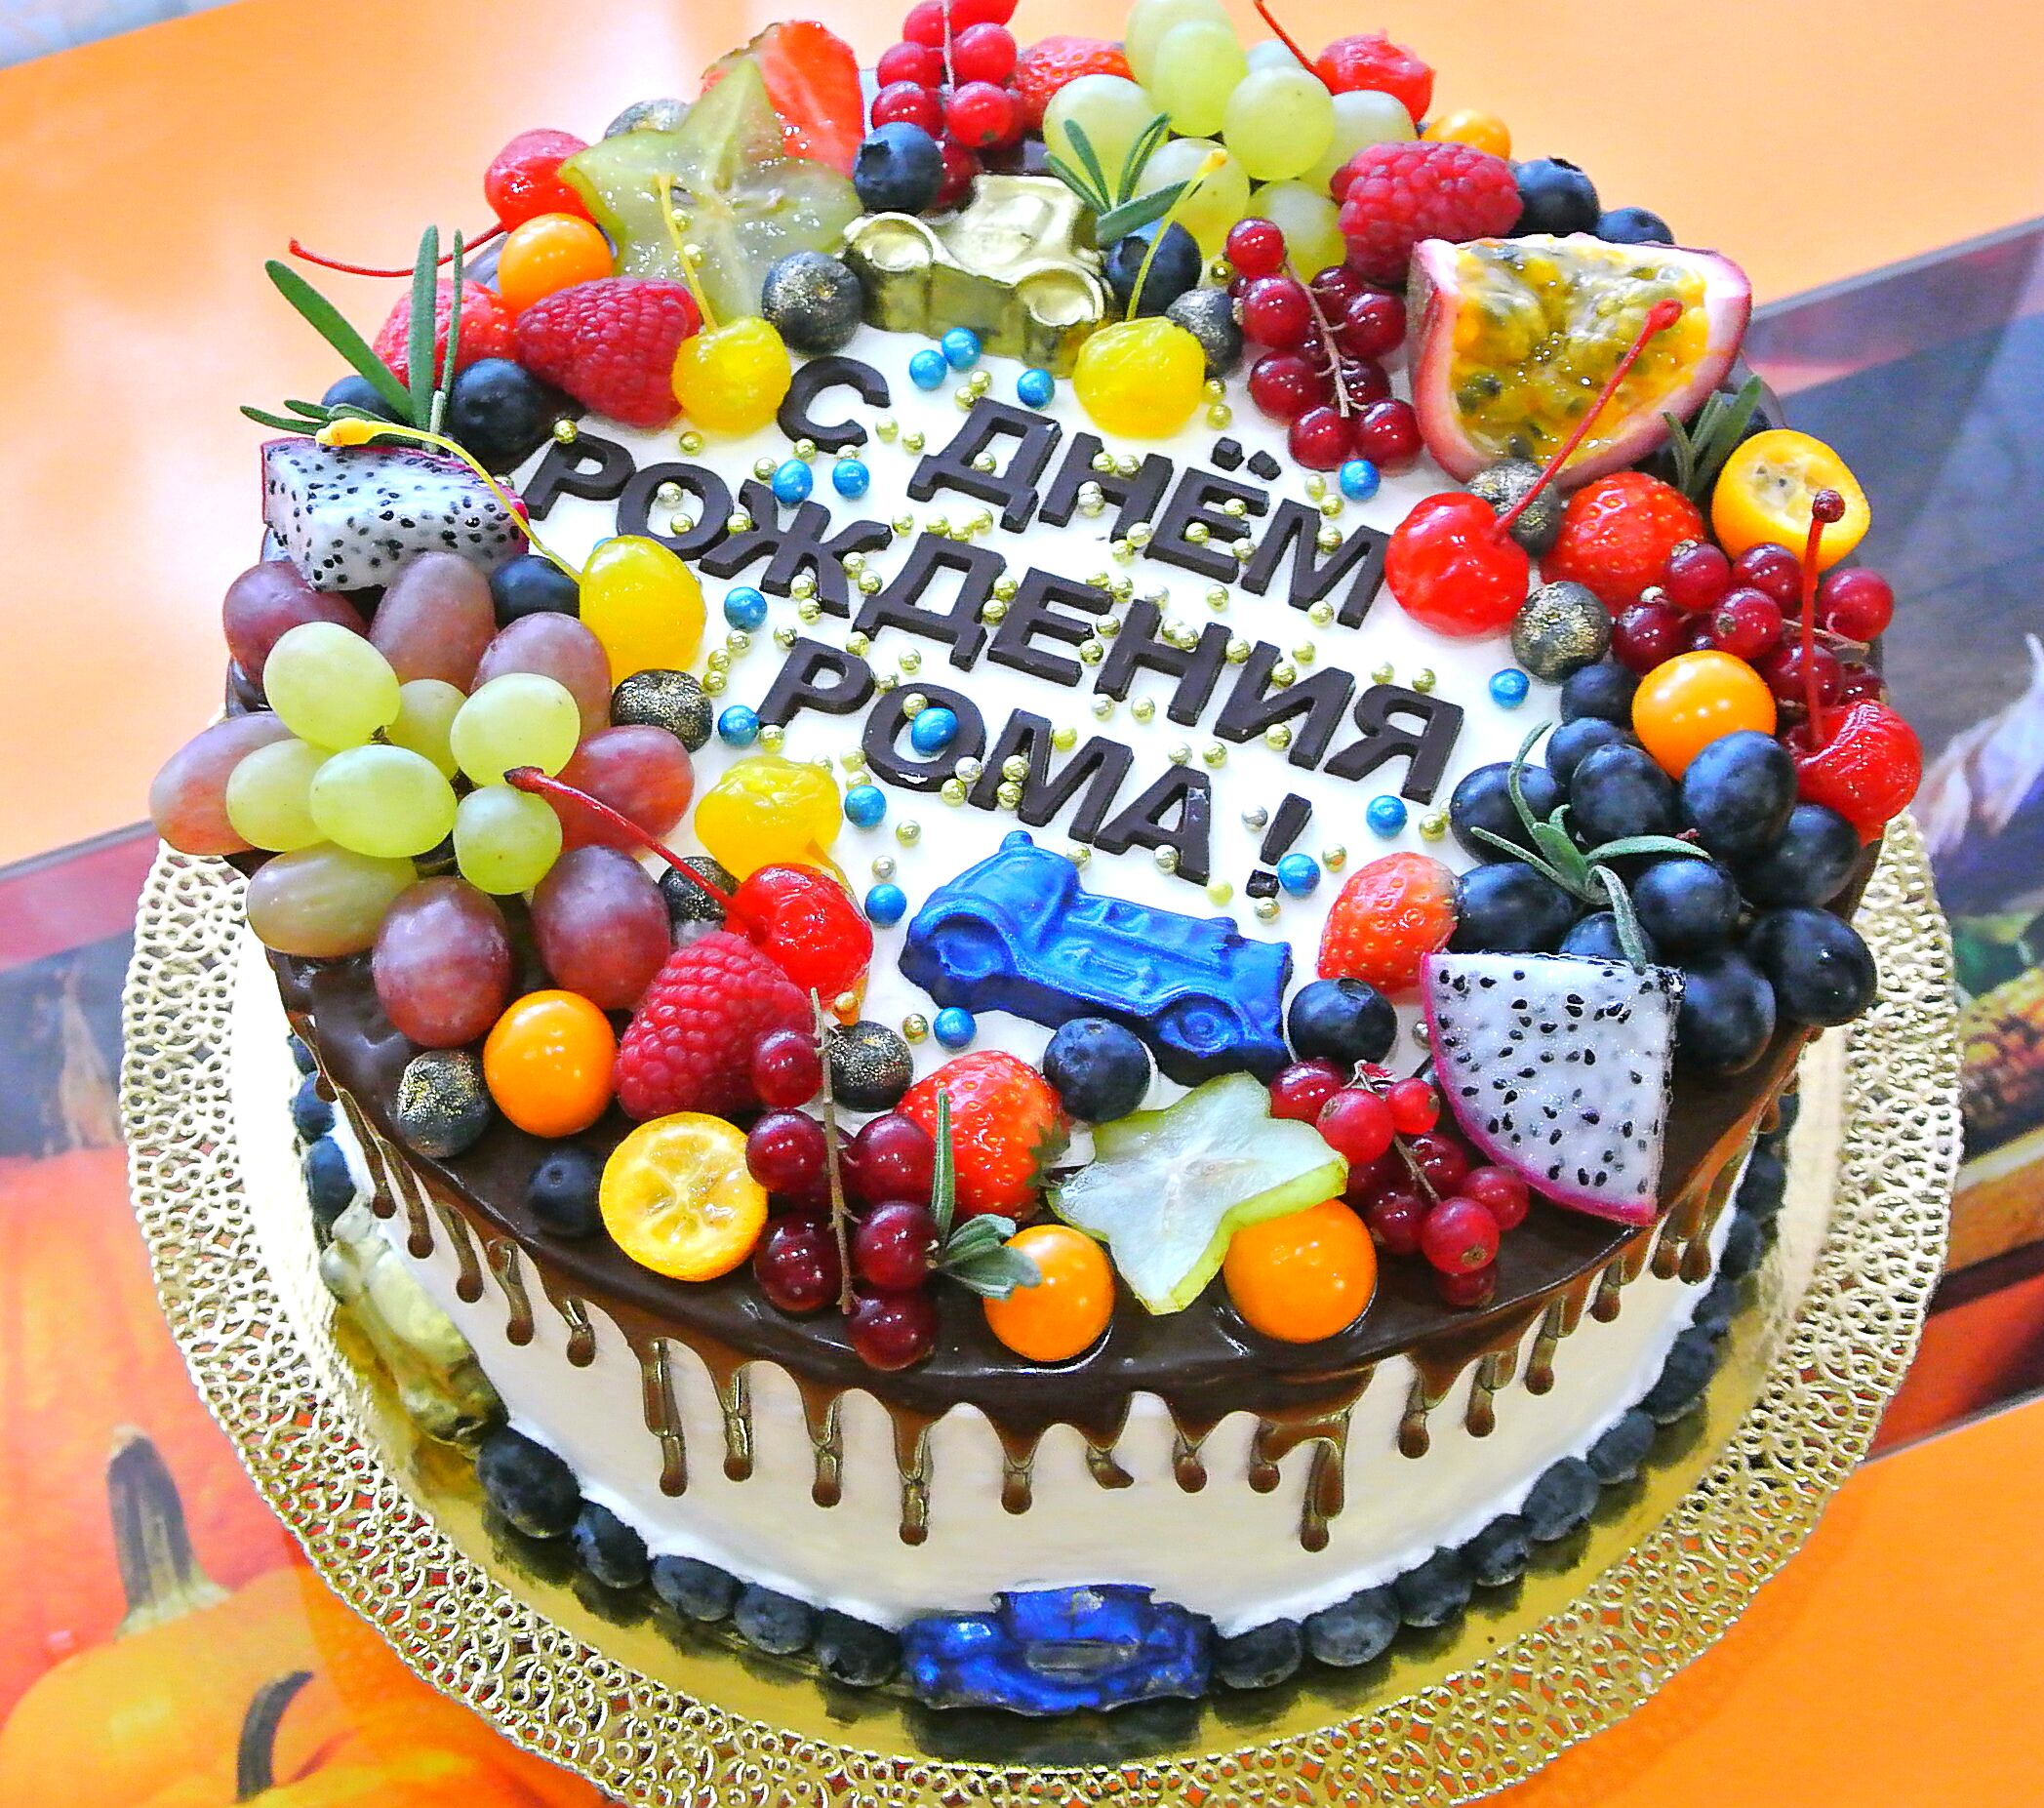 Заказ на дом на день рождения. Красивые торты на день рождения. Тортик с днем рождения. Шикарный торт на день рождения. Красивые торты для детей на день рождения.